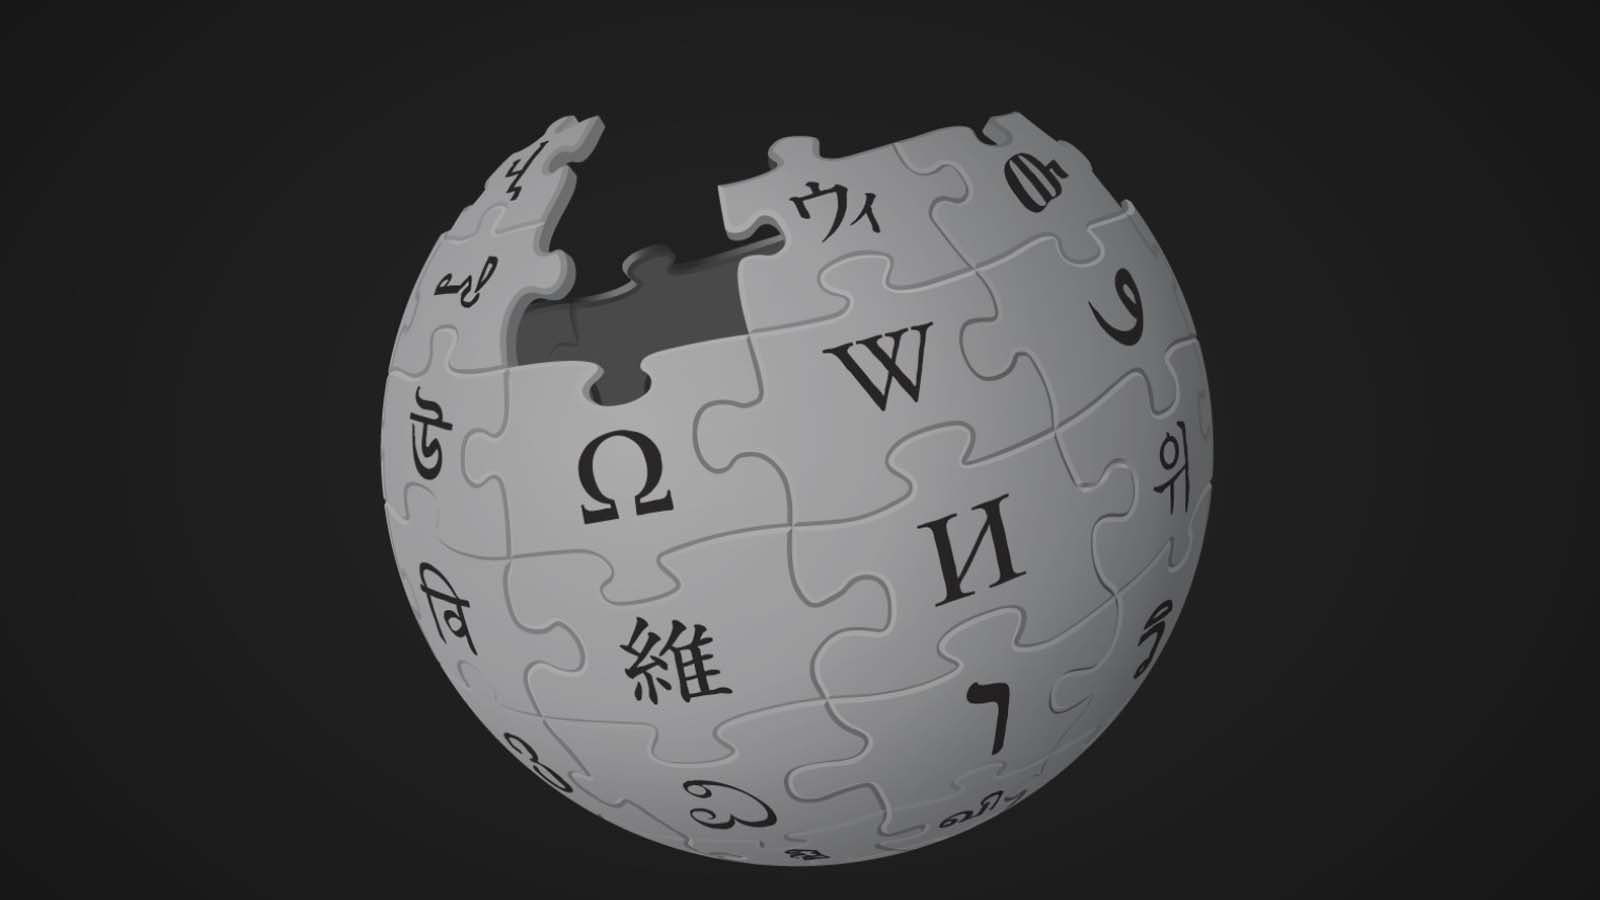 L'impatto rivoluzionario di Wikipedia nel mondo digitale